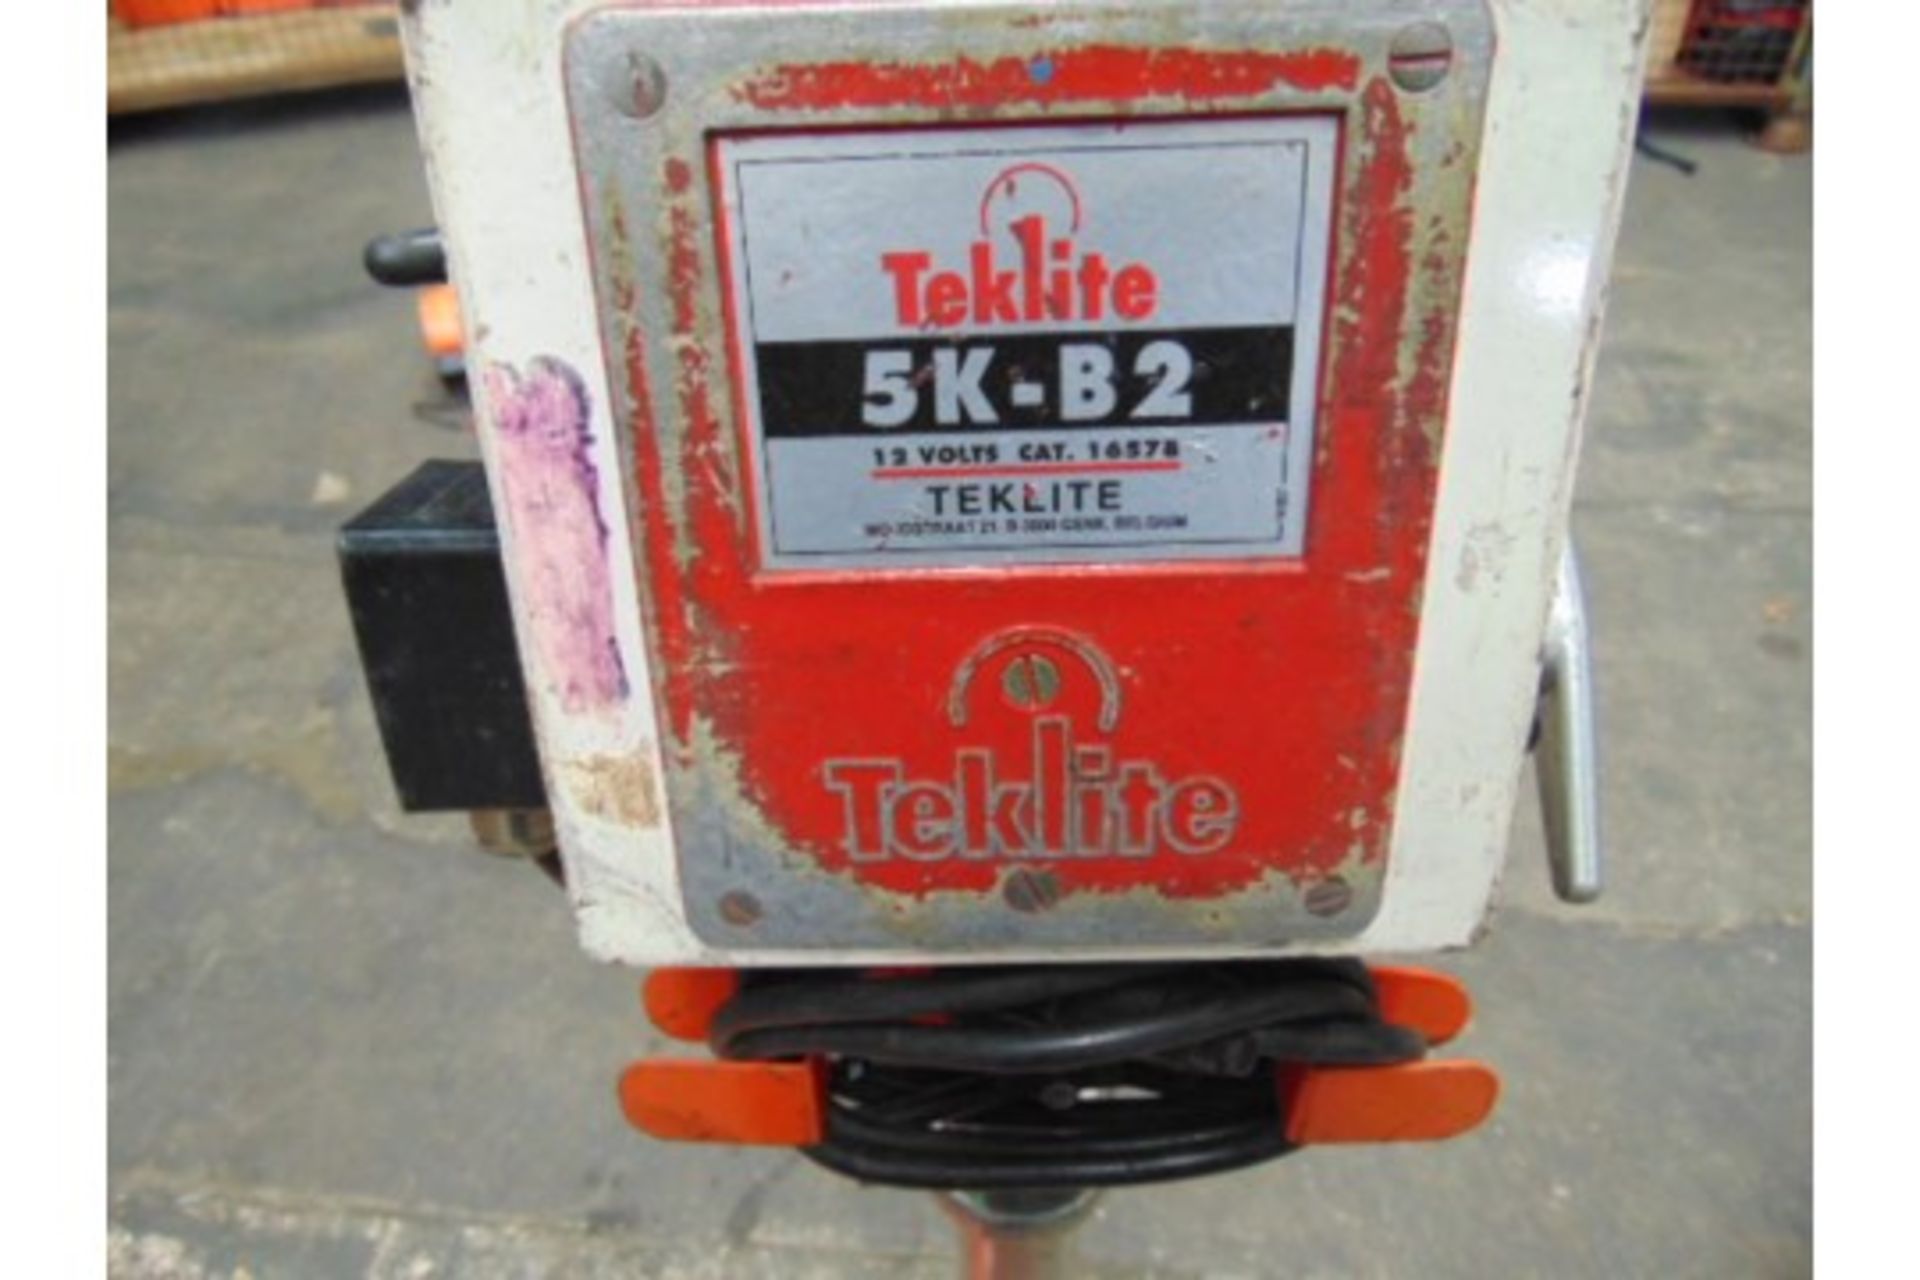 Teklite 5K-B2 Portable Worklight with 2 xTeklite Senior Battery - Bild 3 aus 4